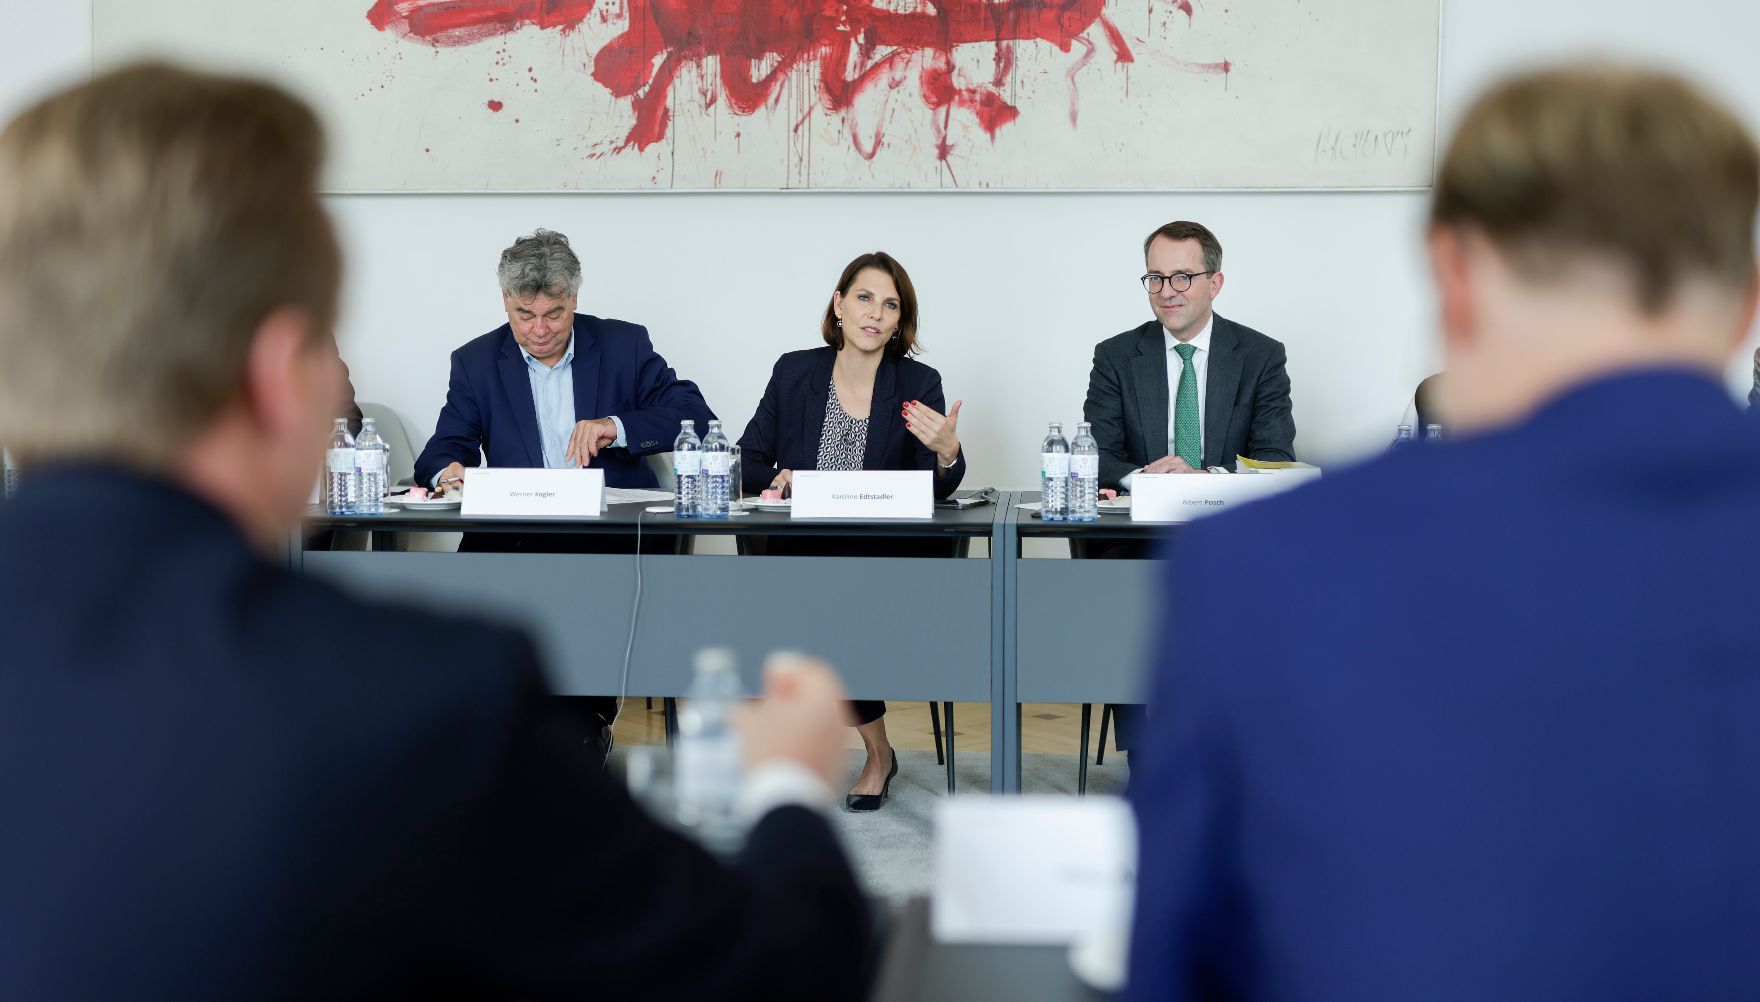 Am 12. Oktober 2022 lud Bundesministerin Karoline Edtstadler gemeinsam mit Vizekanzler Werner Kogler Vertreter der Industriellen Vereinigung und der Wirtschaftskammer zu einem Gespräch zur Infofreiheit ein.